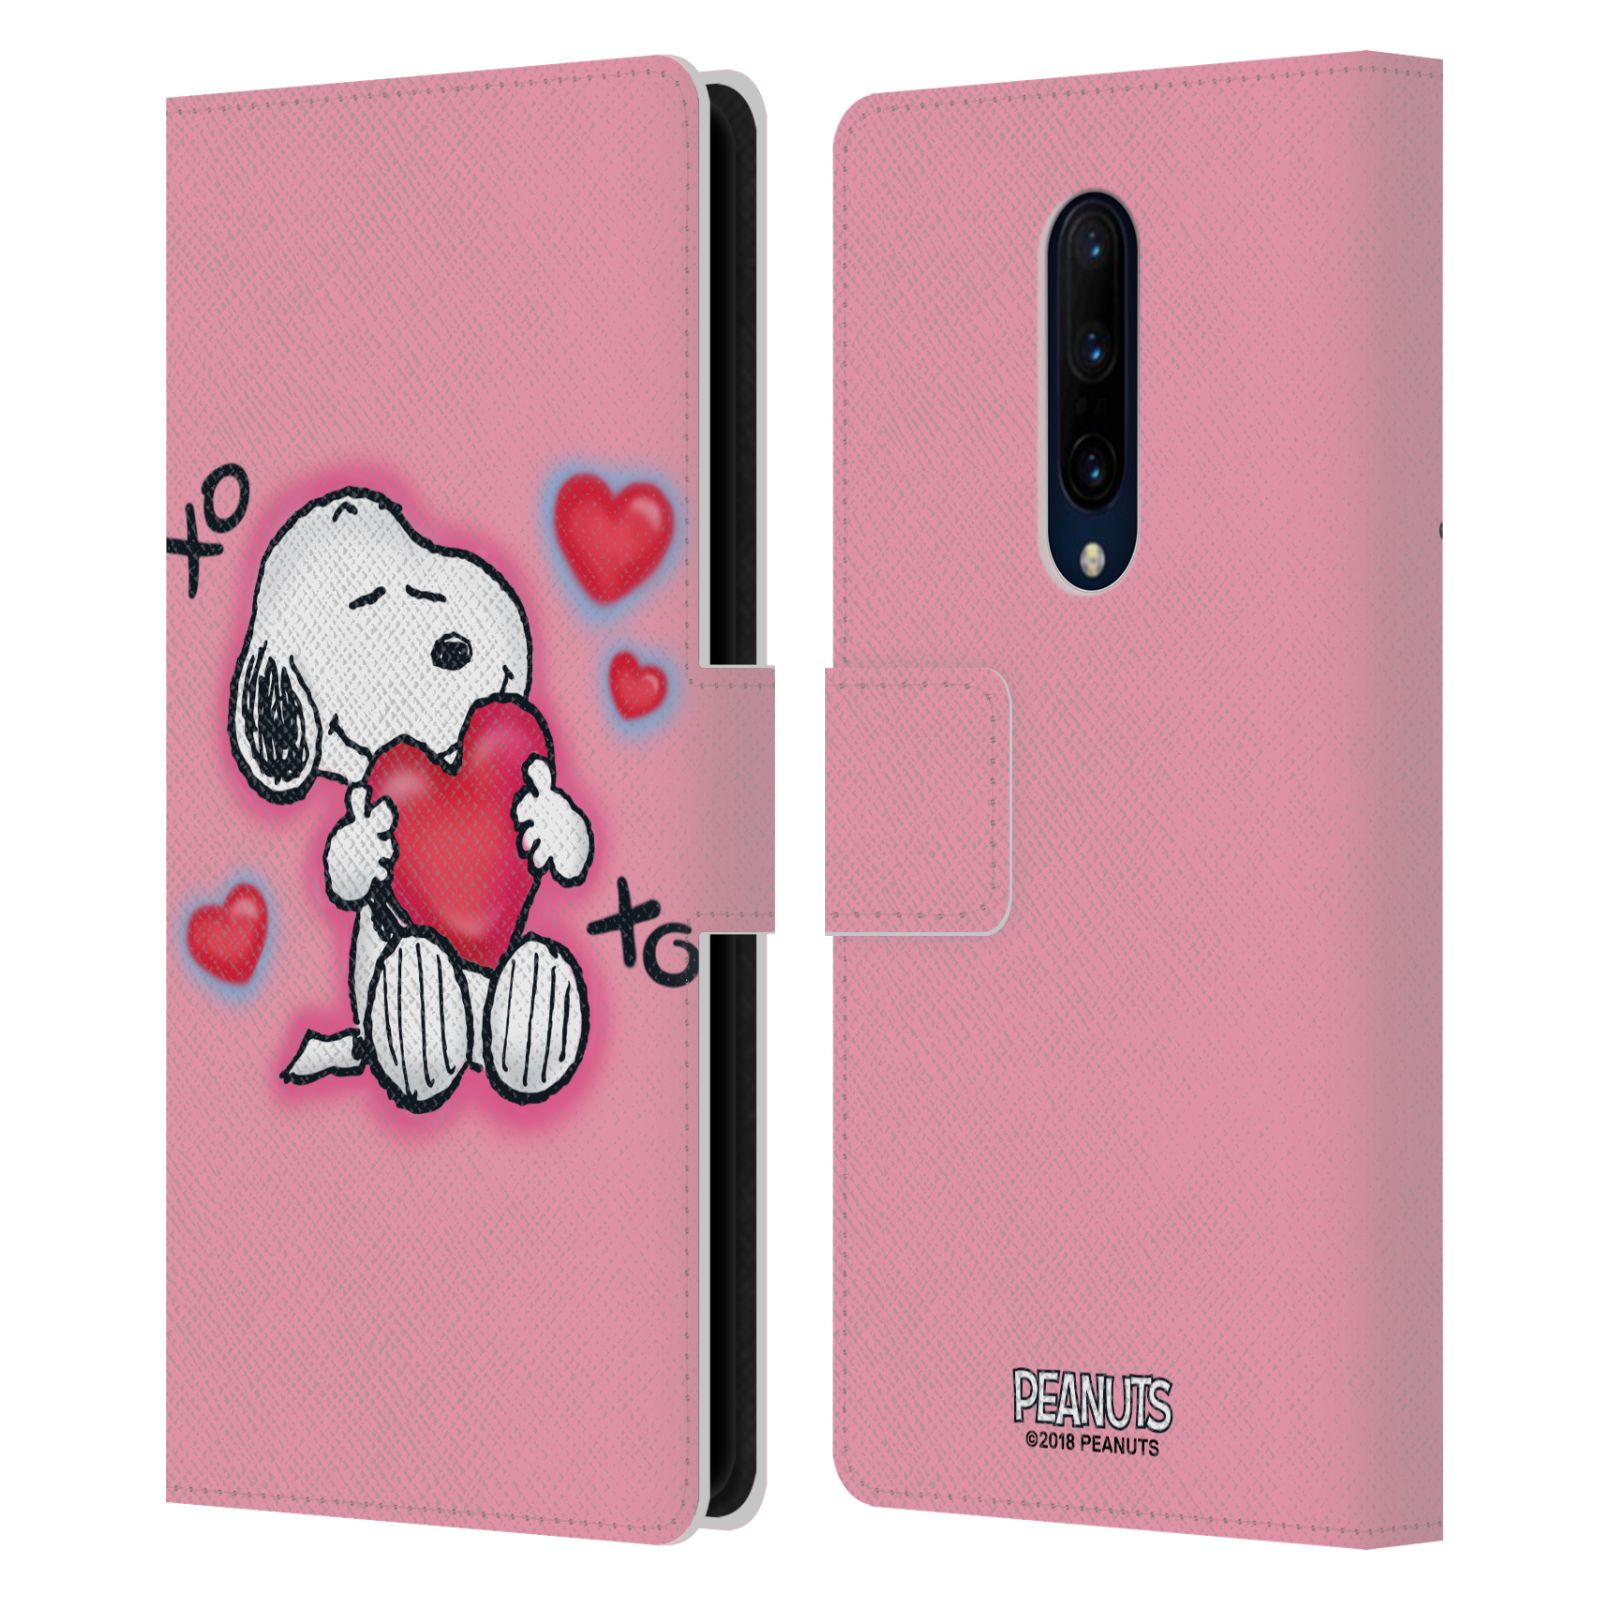 Pouzdro na mobil OnePlus 7 PRO  - HEAD CASE - Peanuts - Snoopy a srdíčka